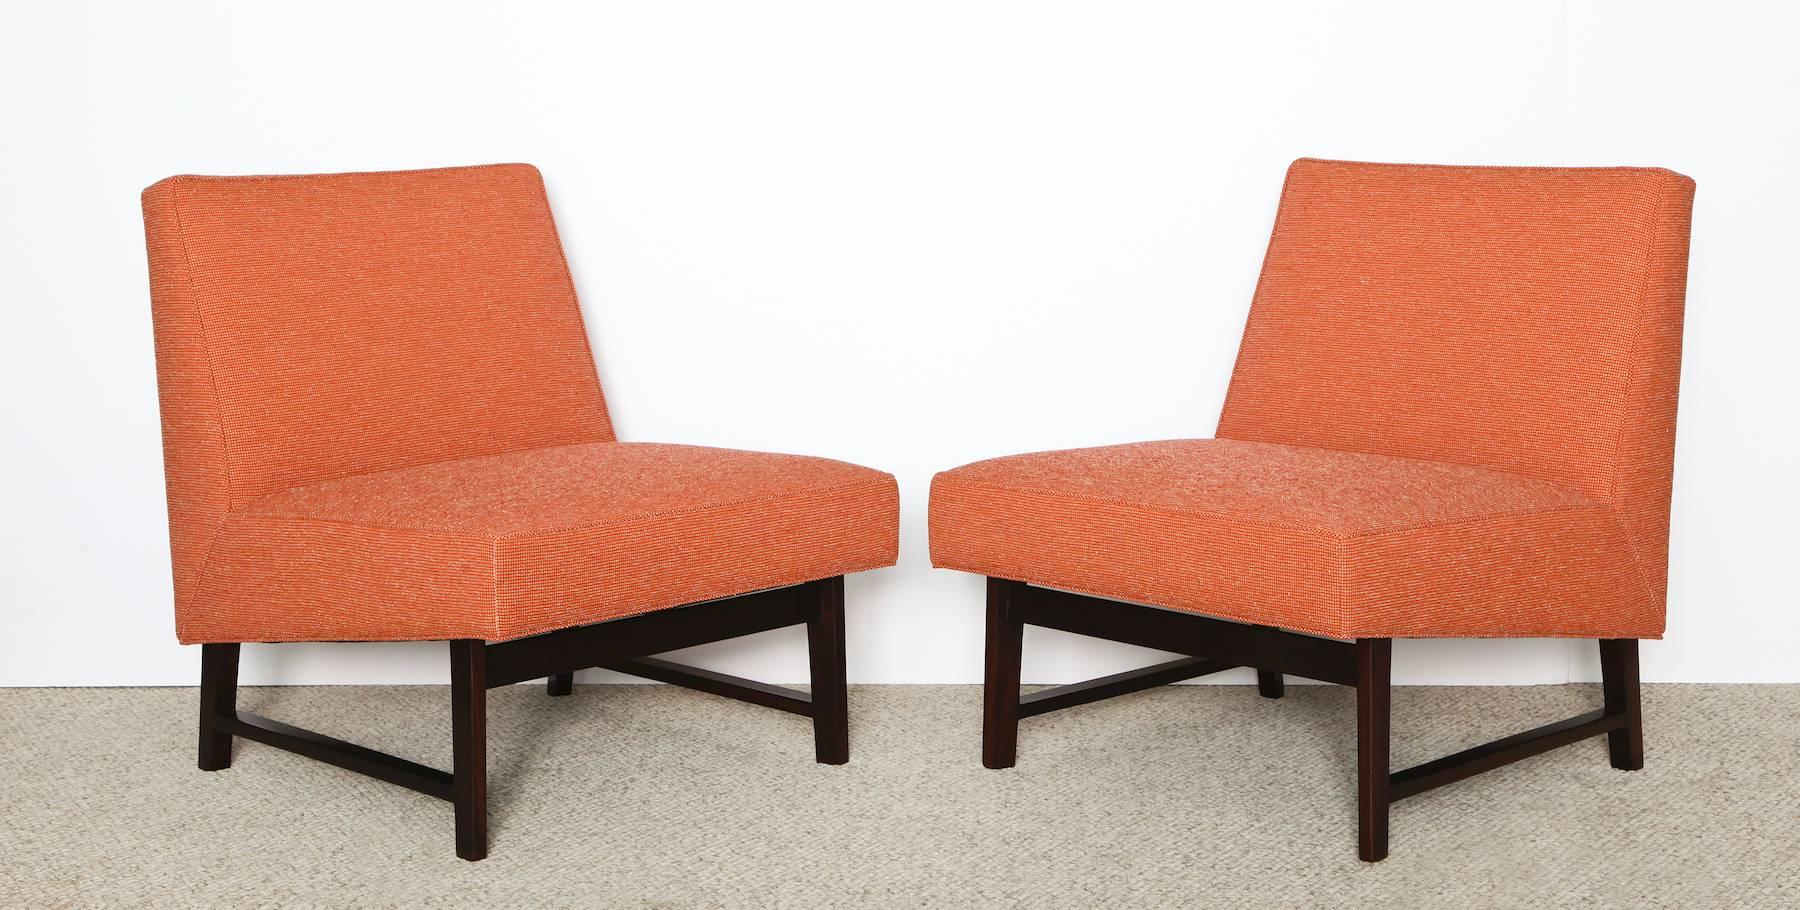 American Edward Wormley - Dunbar Slipper Chairs